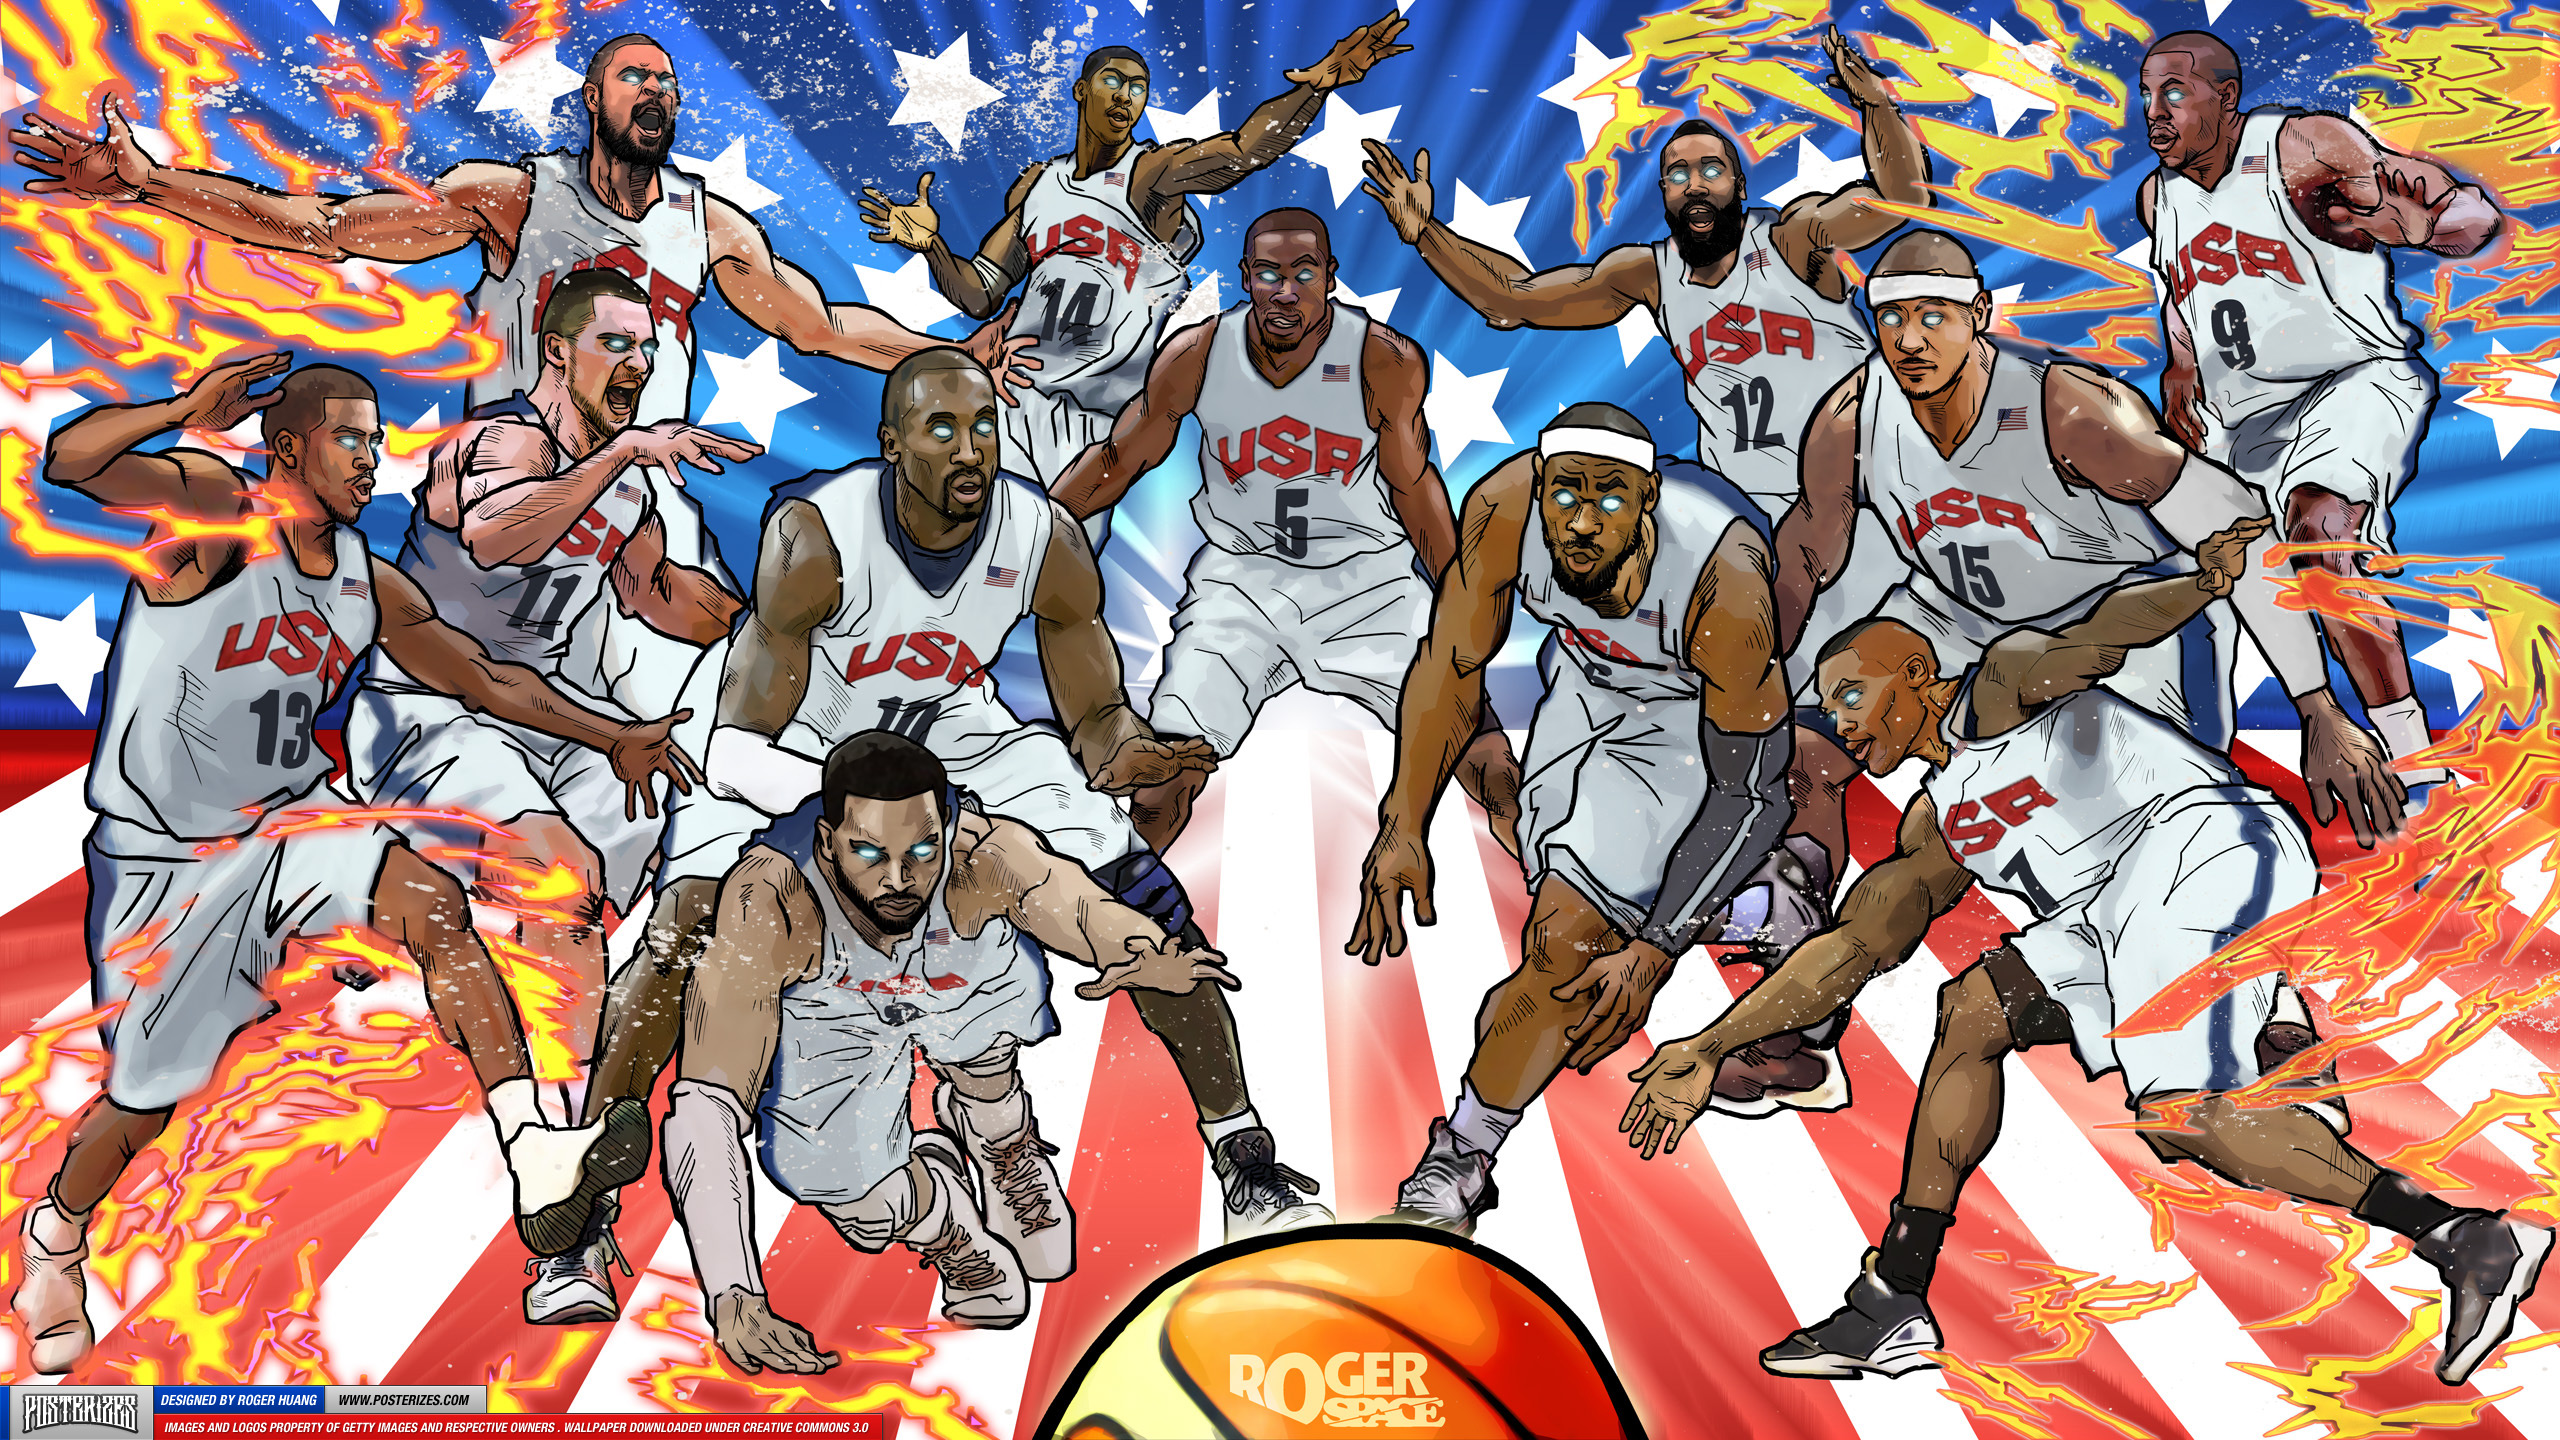 Nba Usa Team Wallpaper Share This Cool Basketball